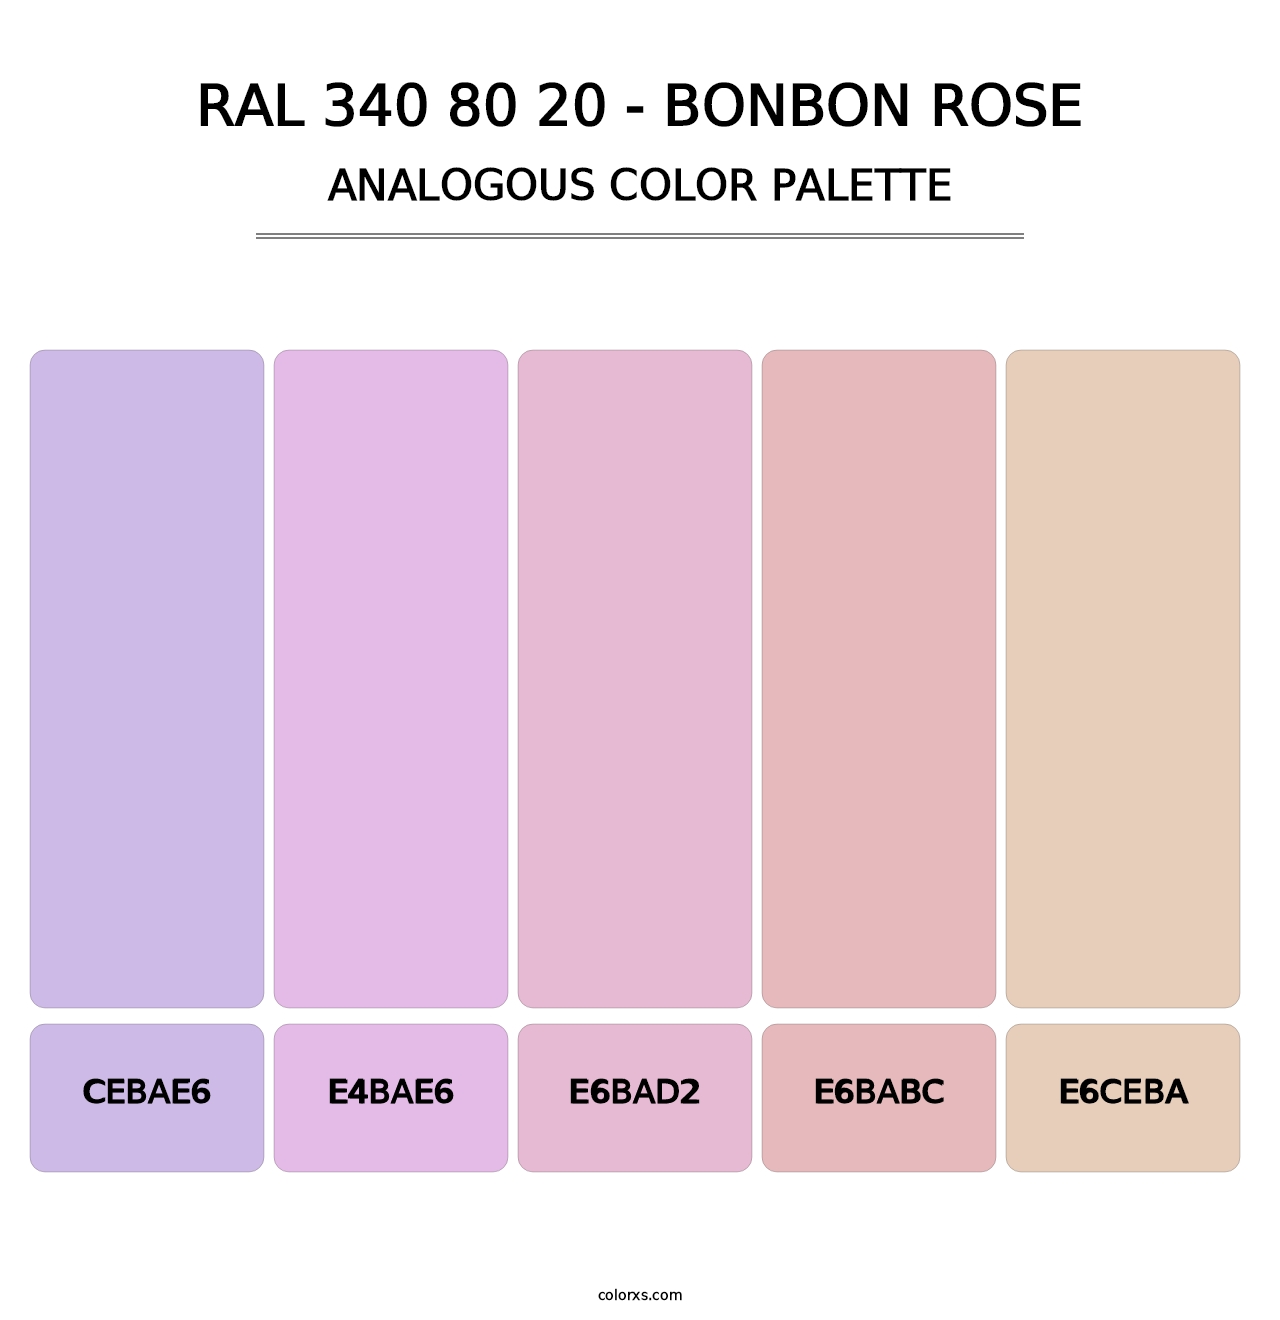 RAL 340 80 20 - Bonbon Rose - Analogous Color Palette